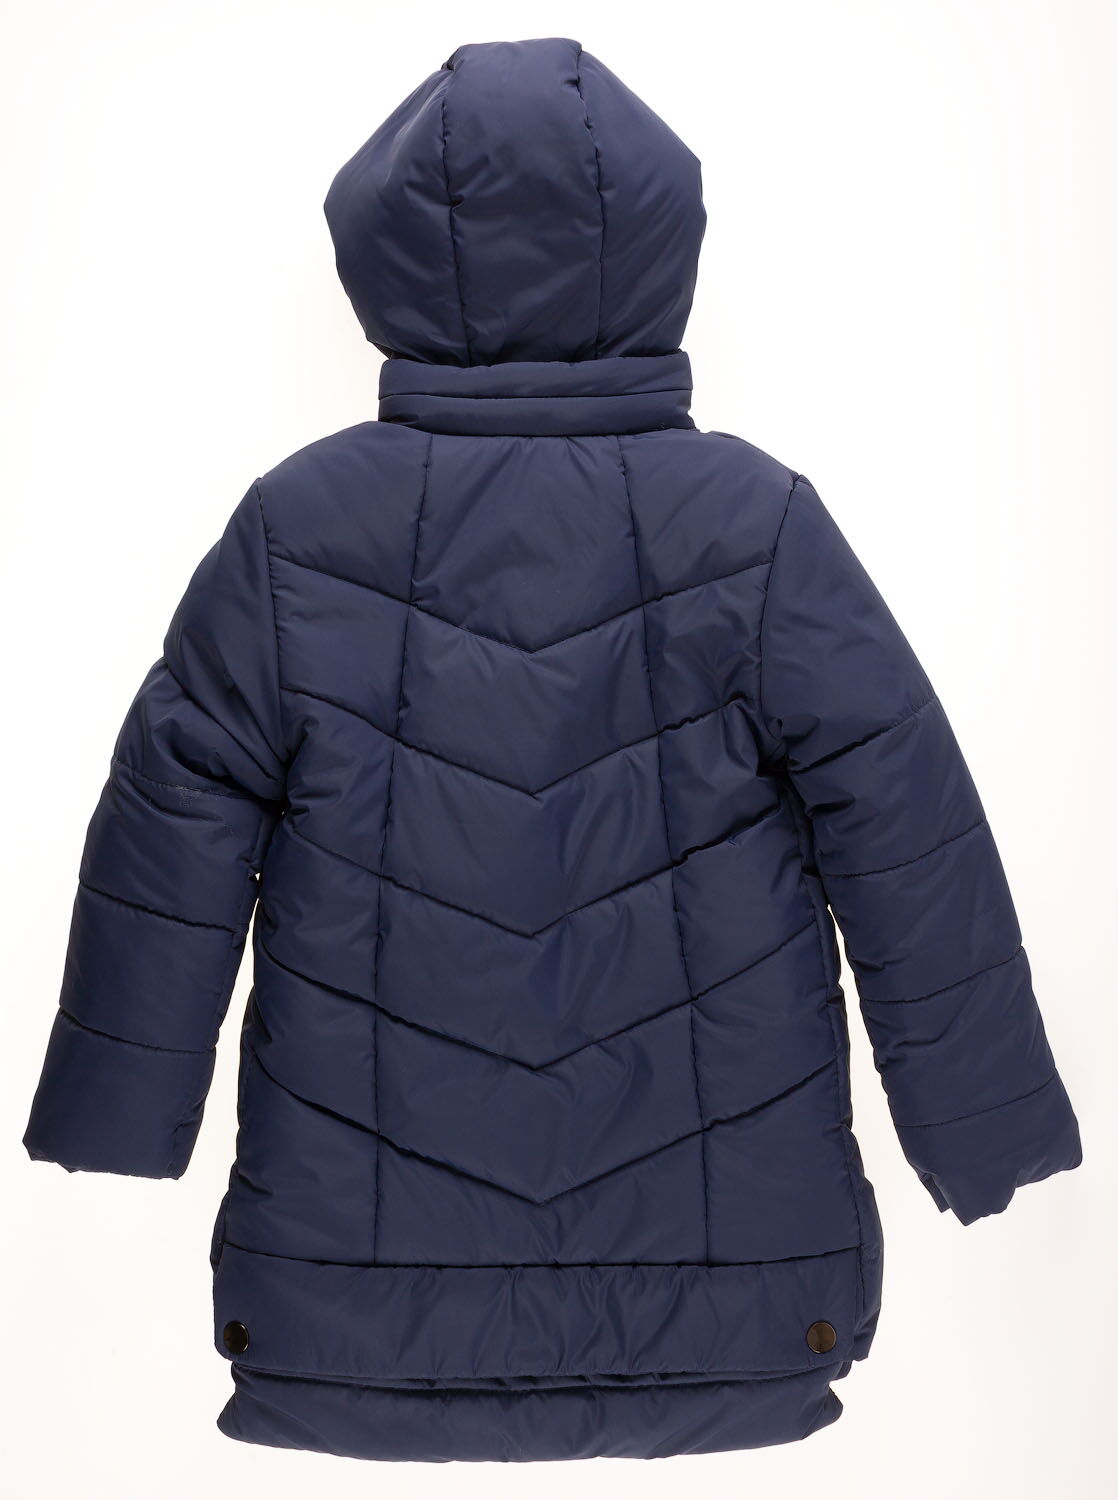 Куртка удлиненная зимняя для девочки Одягайко синяя 20004О - размеры